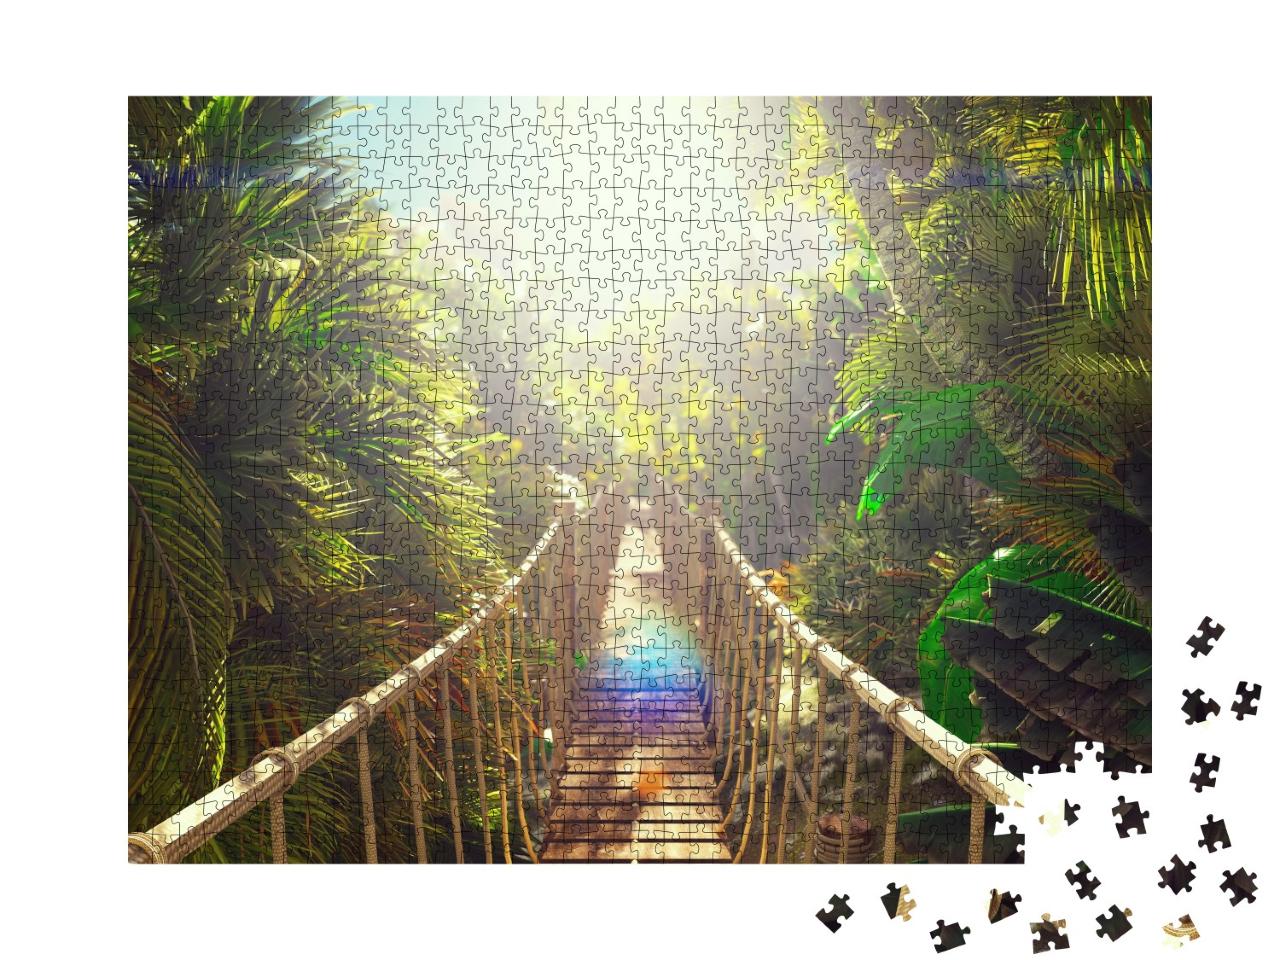 Puzzle de 1000 pièces « Pont en bois au-dessus de la jungle verte »